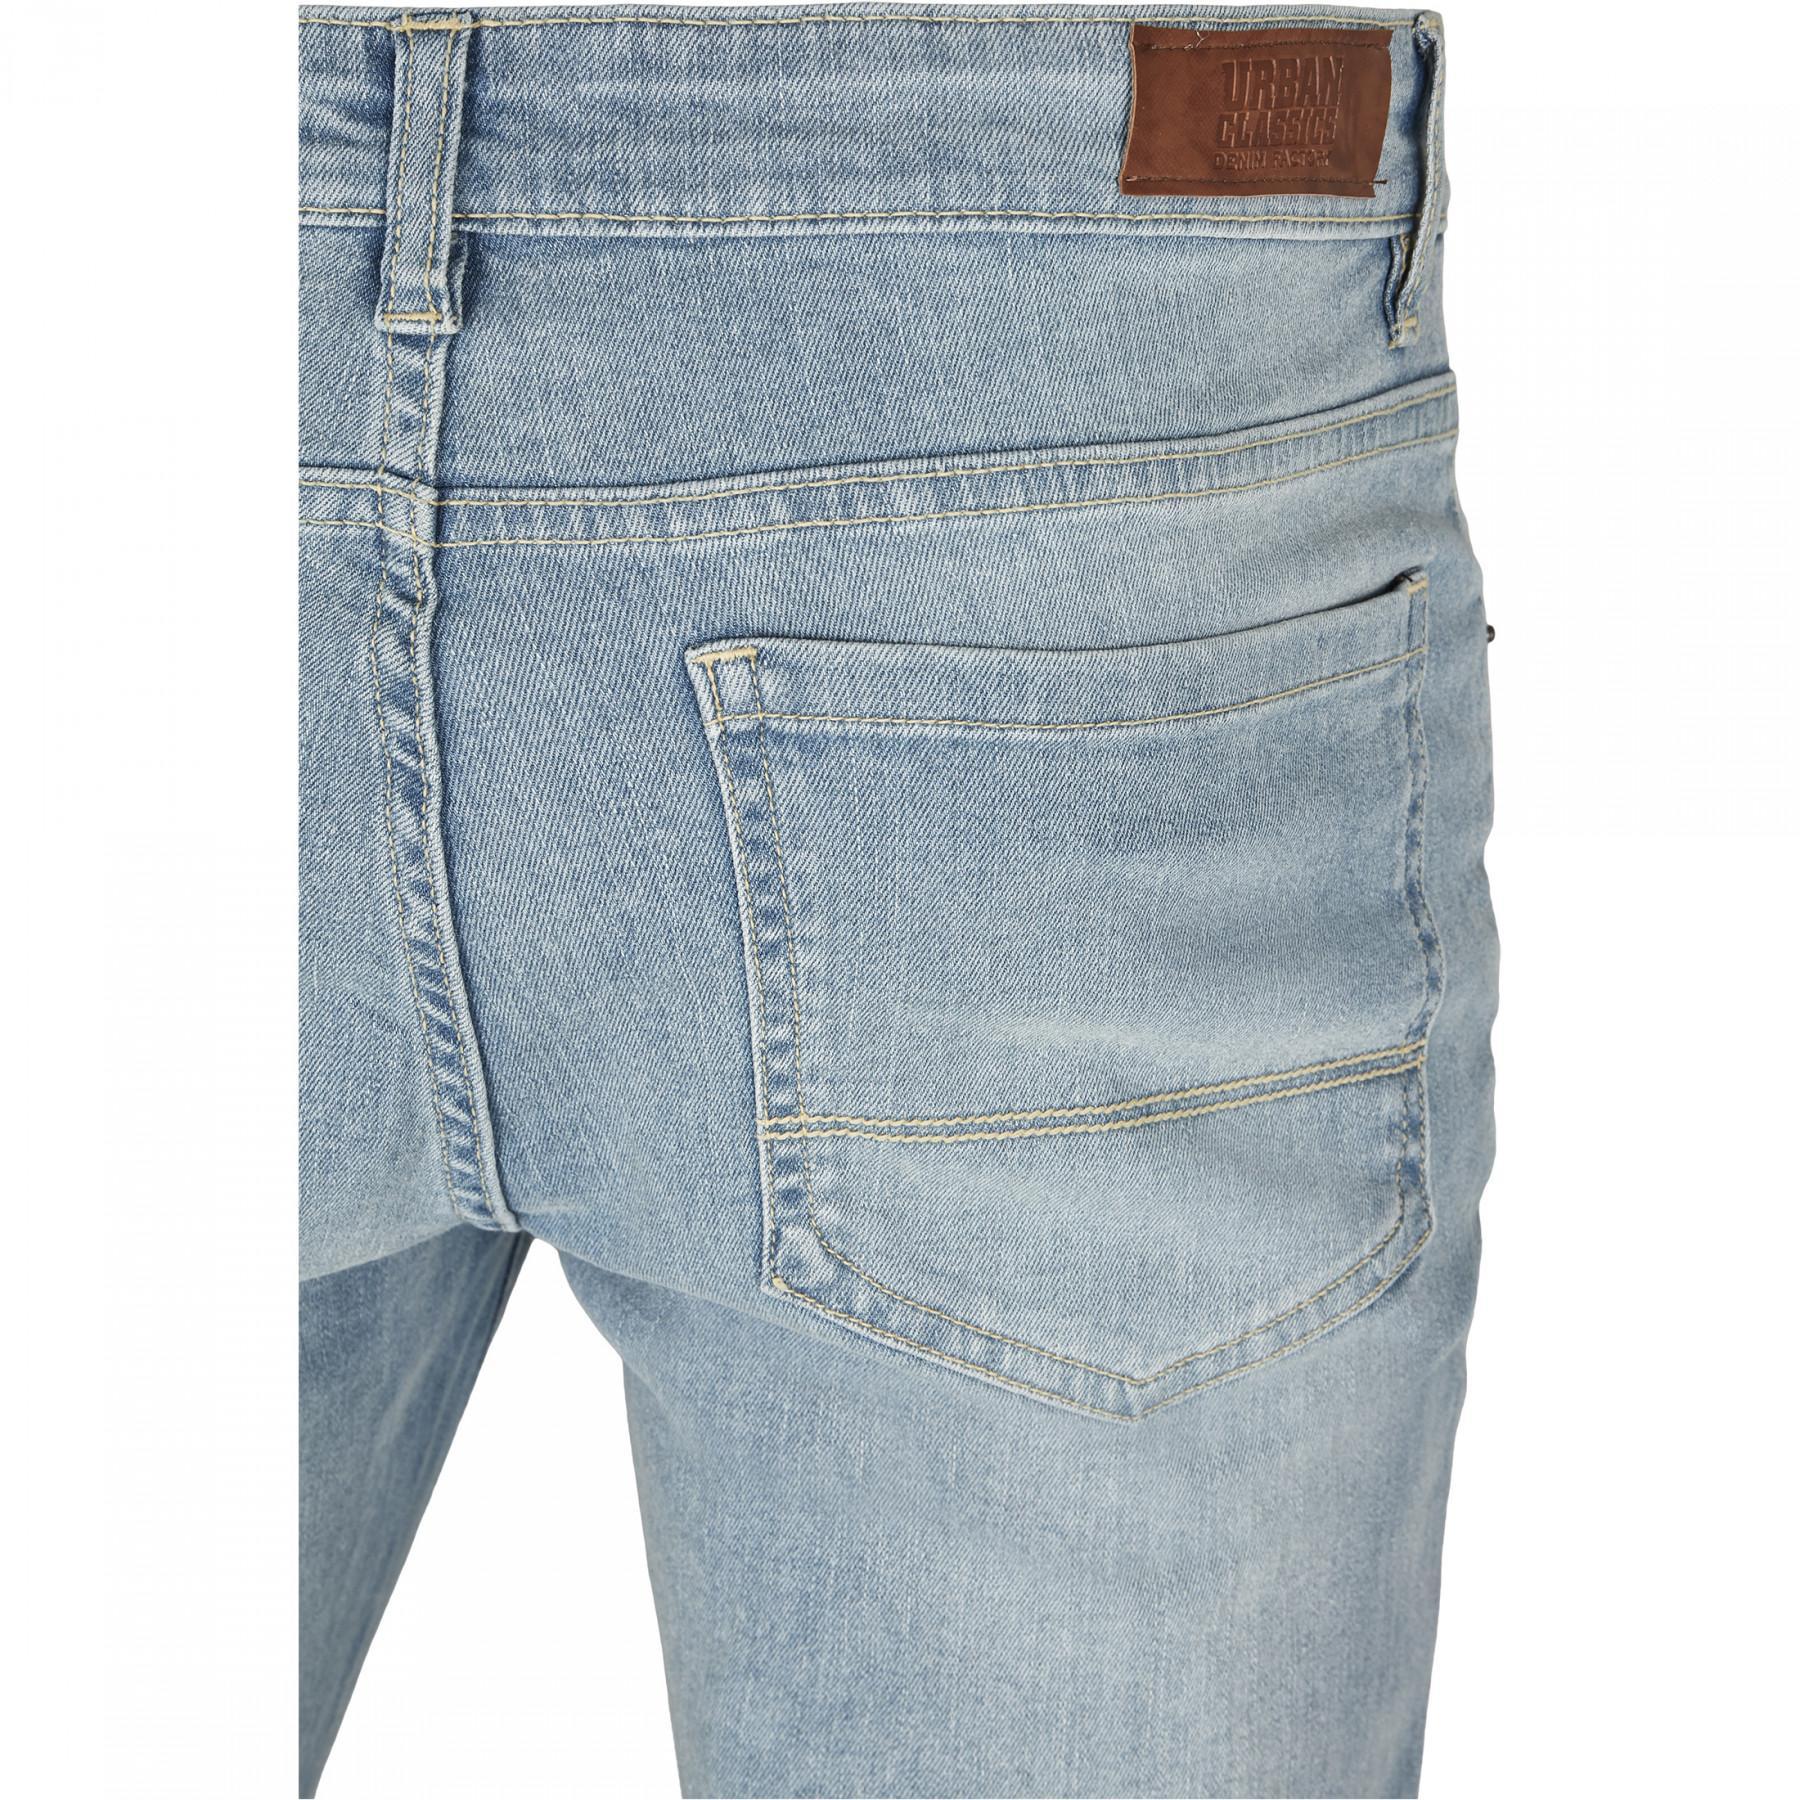 Spodnie dżinsowe Urban Classics slim fit